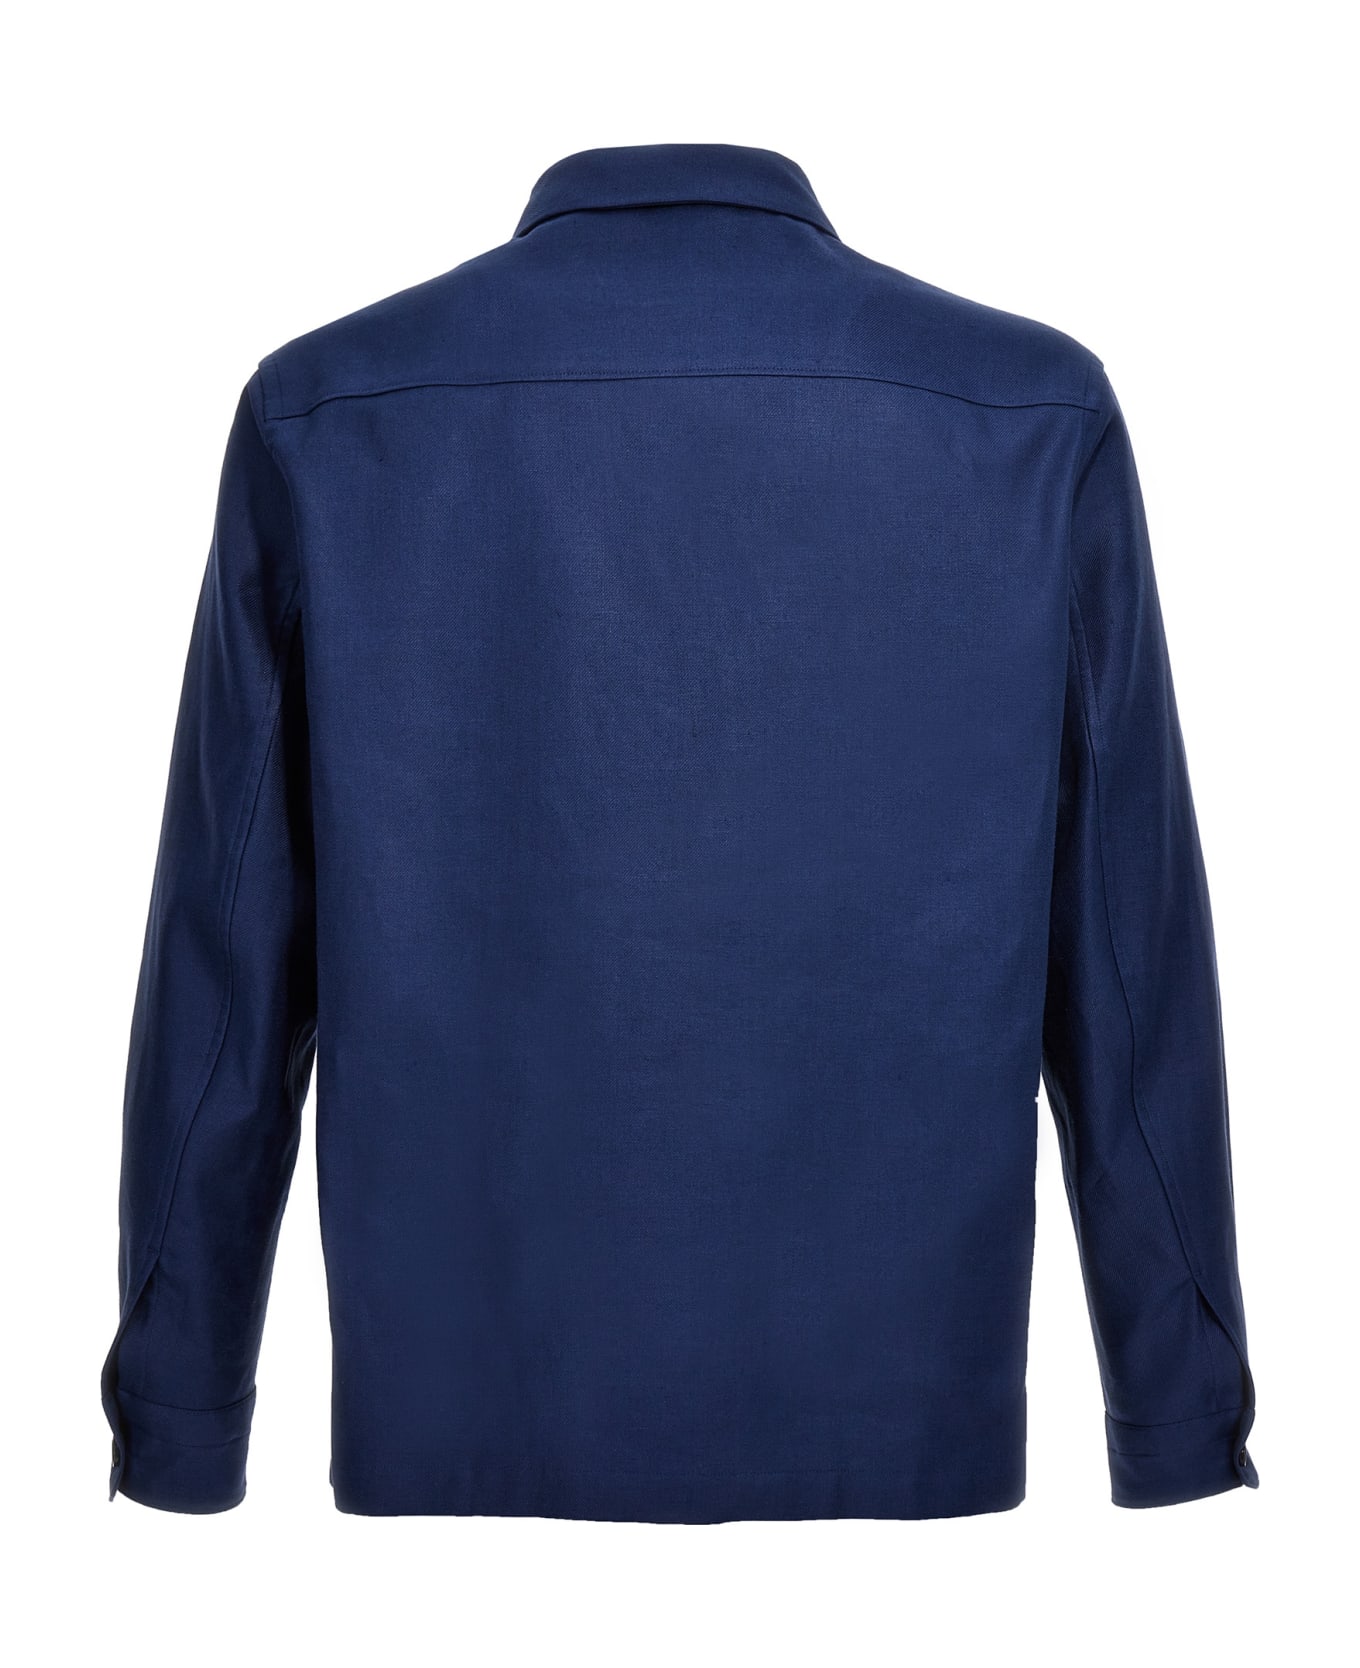 Zegna Linen Jacket - Blue